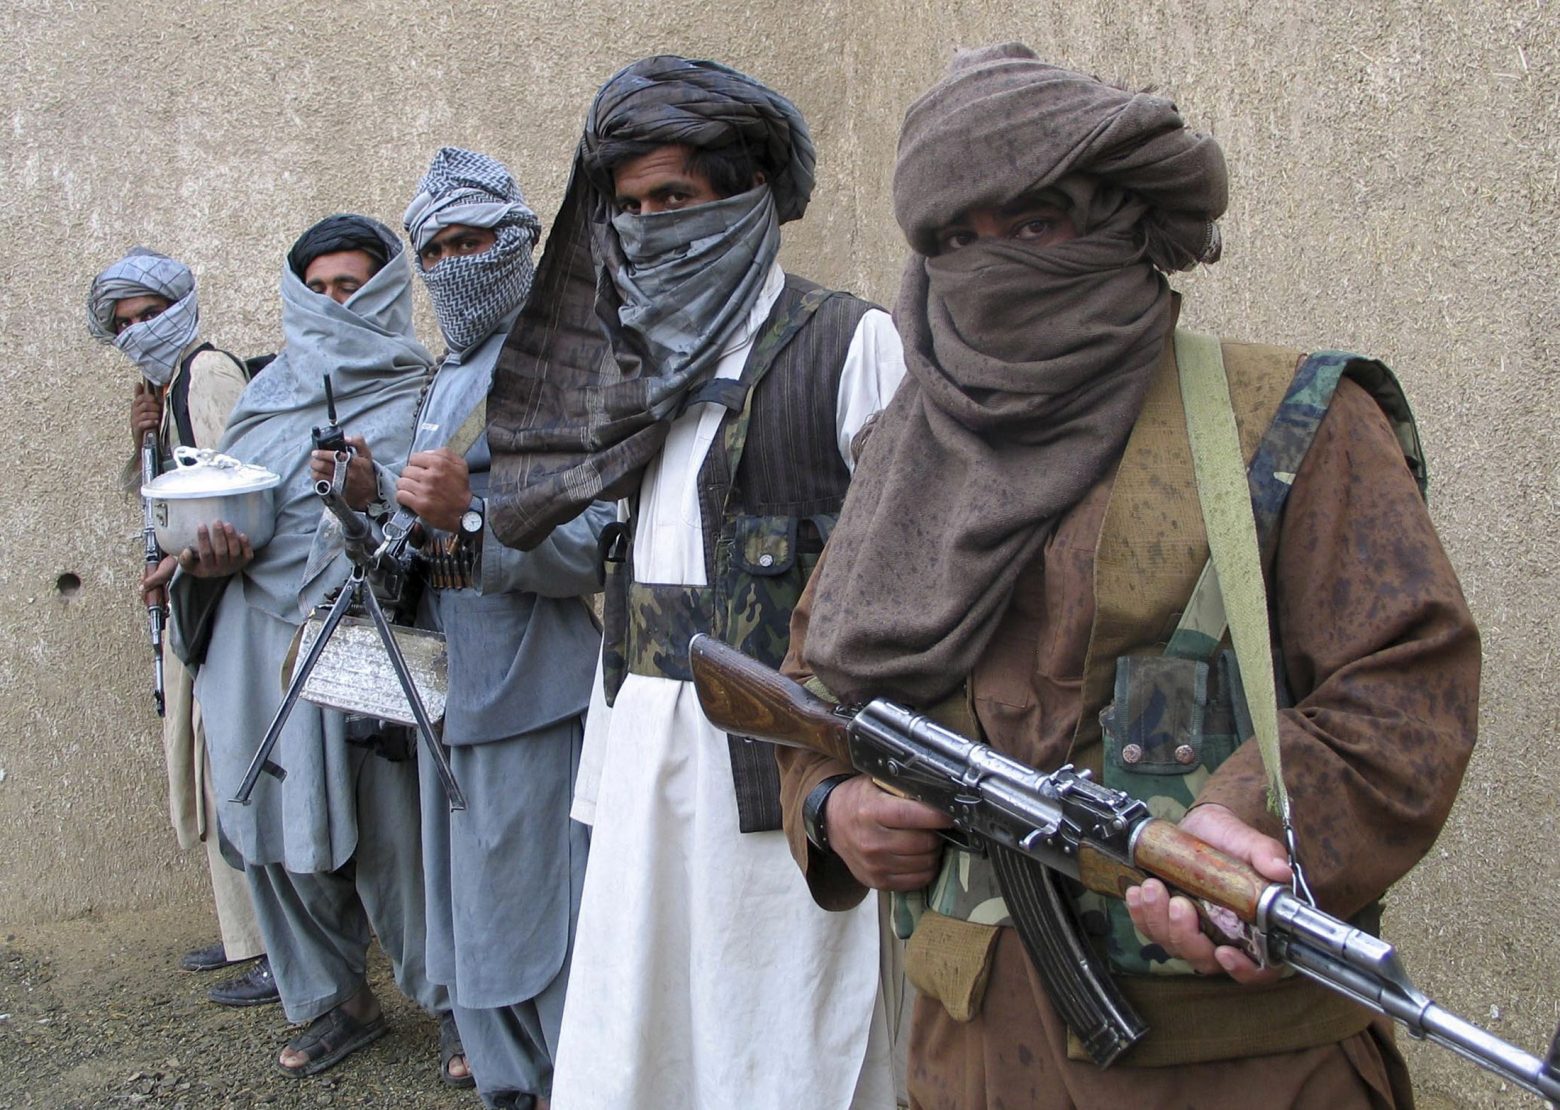 Οι Ταλιμπάν γιορτάζουν ένα χρόνο από την αποχώρηση των ξένων στρατευμάτων από το Αφγανιστάν